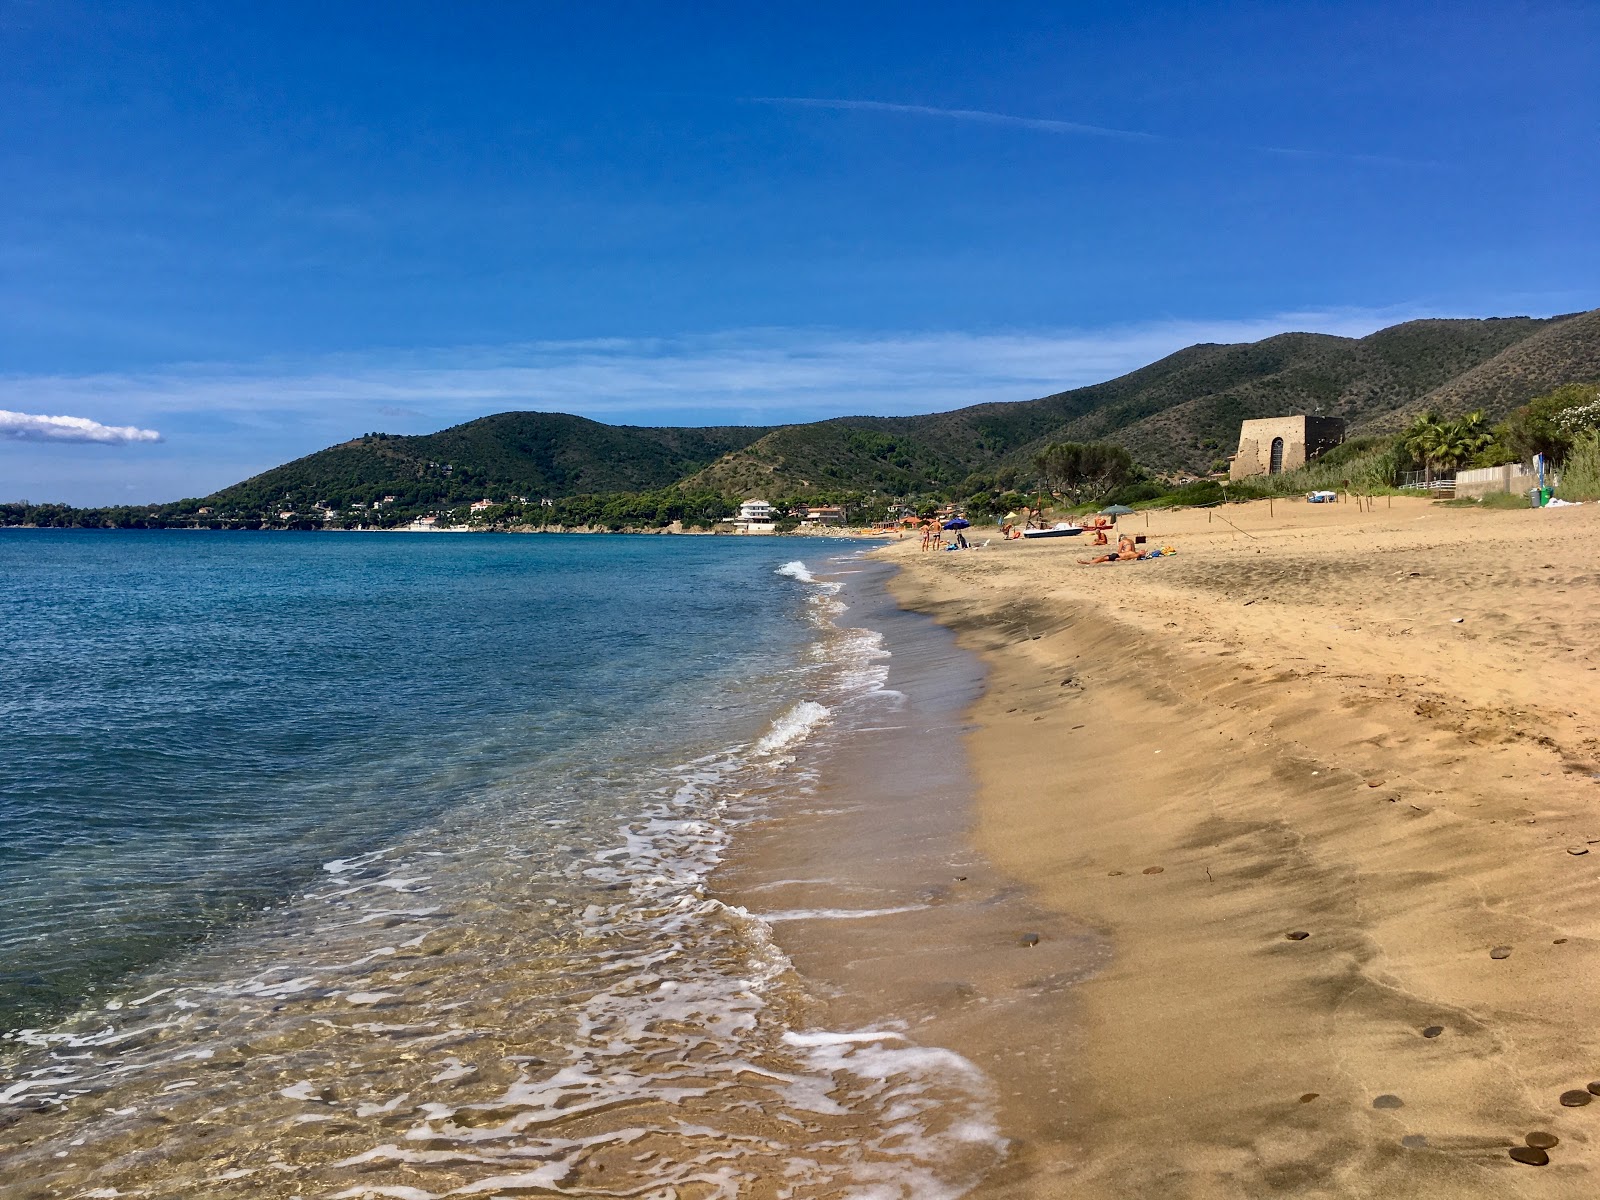 Spiaggia di Baia Arena'in fotoğrafı i̇nce kahverengi kum yüzey ile